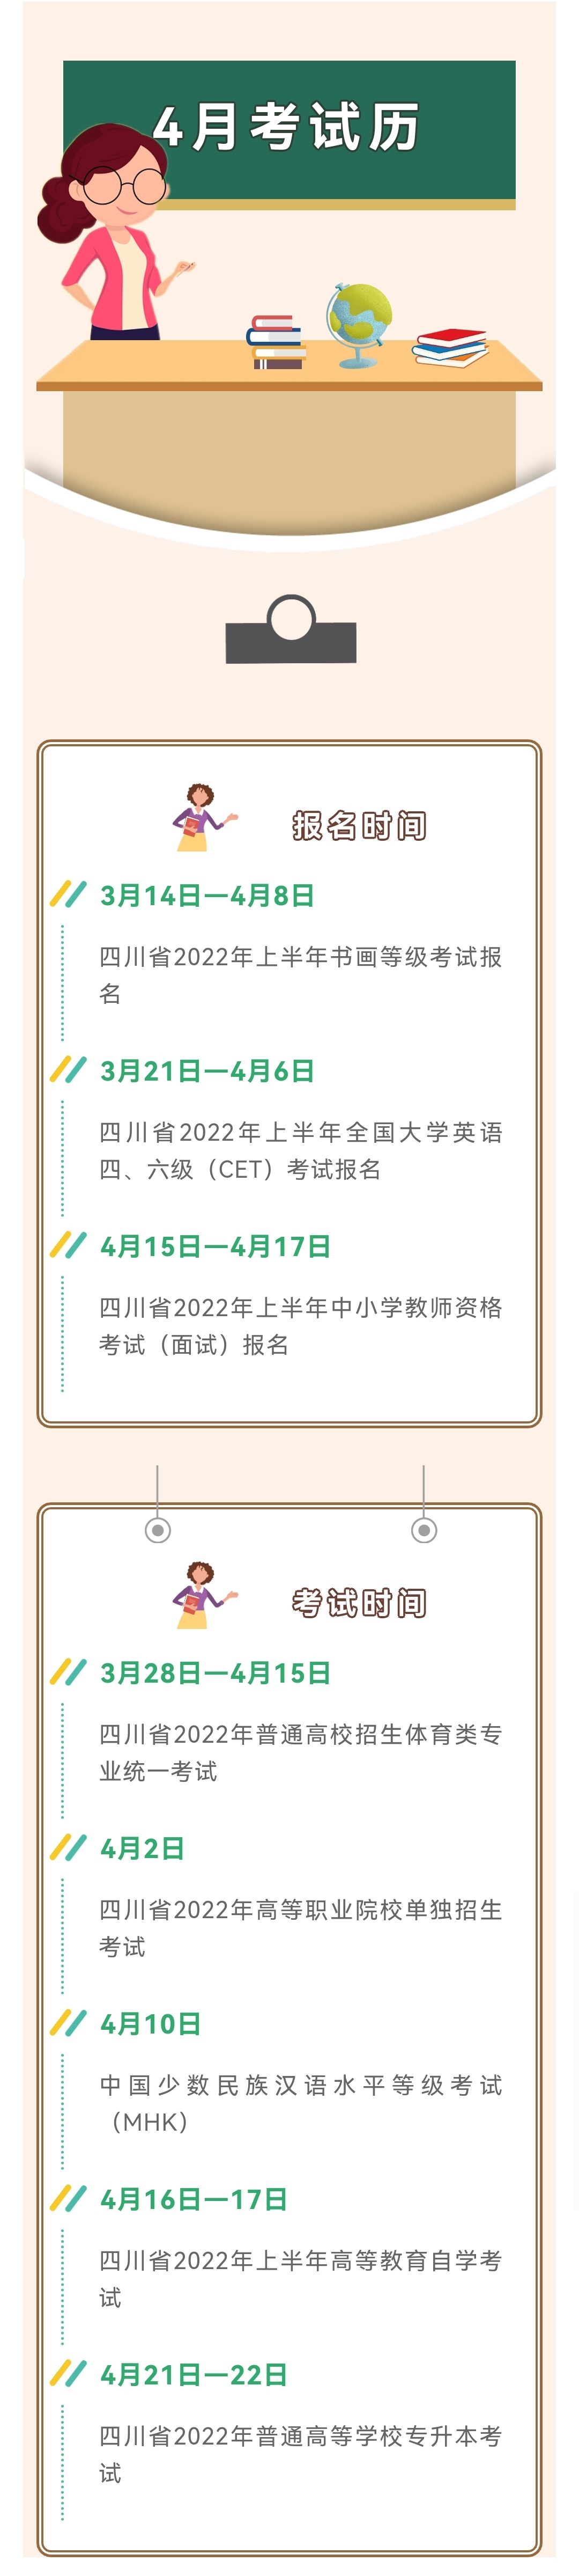 关注！2022年4月四川教育考试月历新鲜出炉！